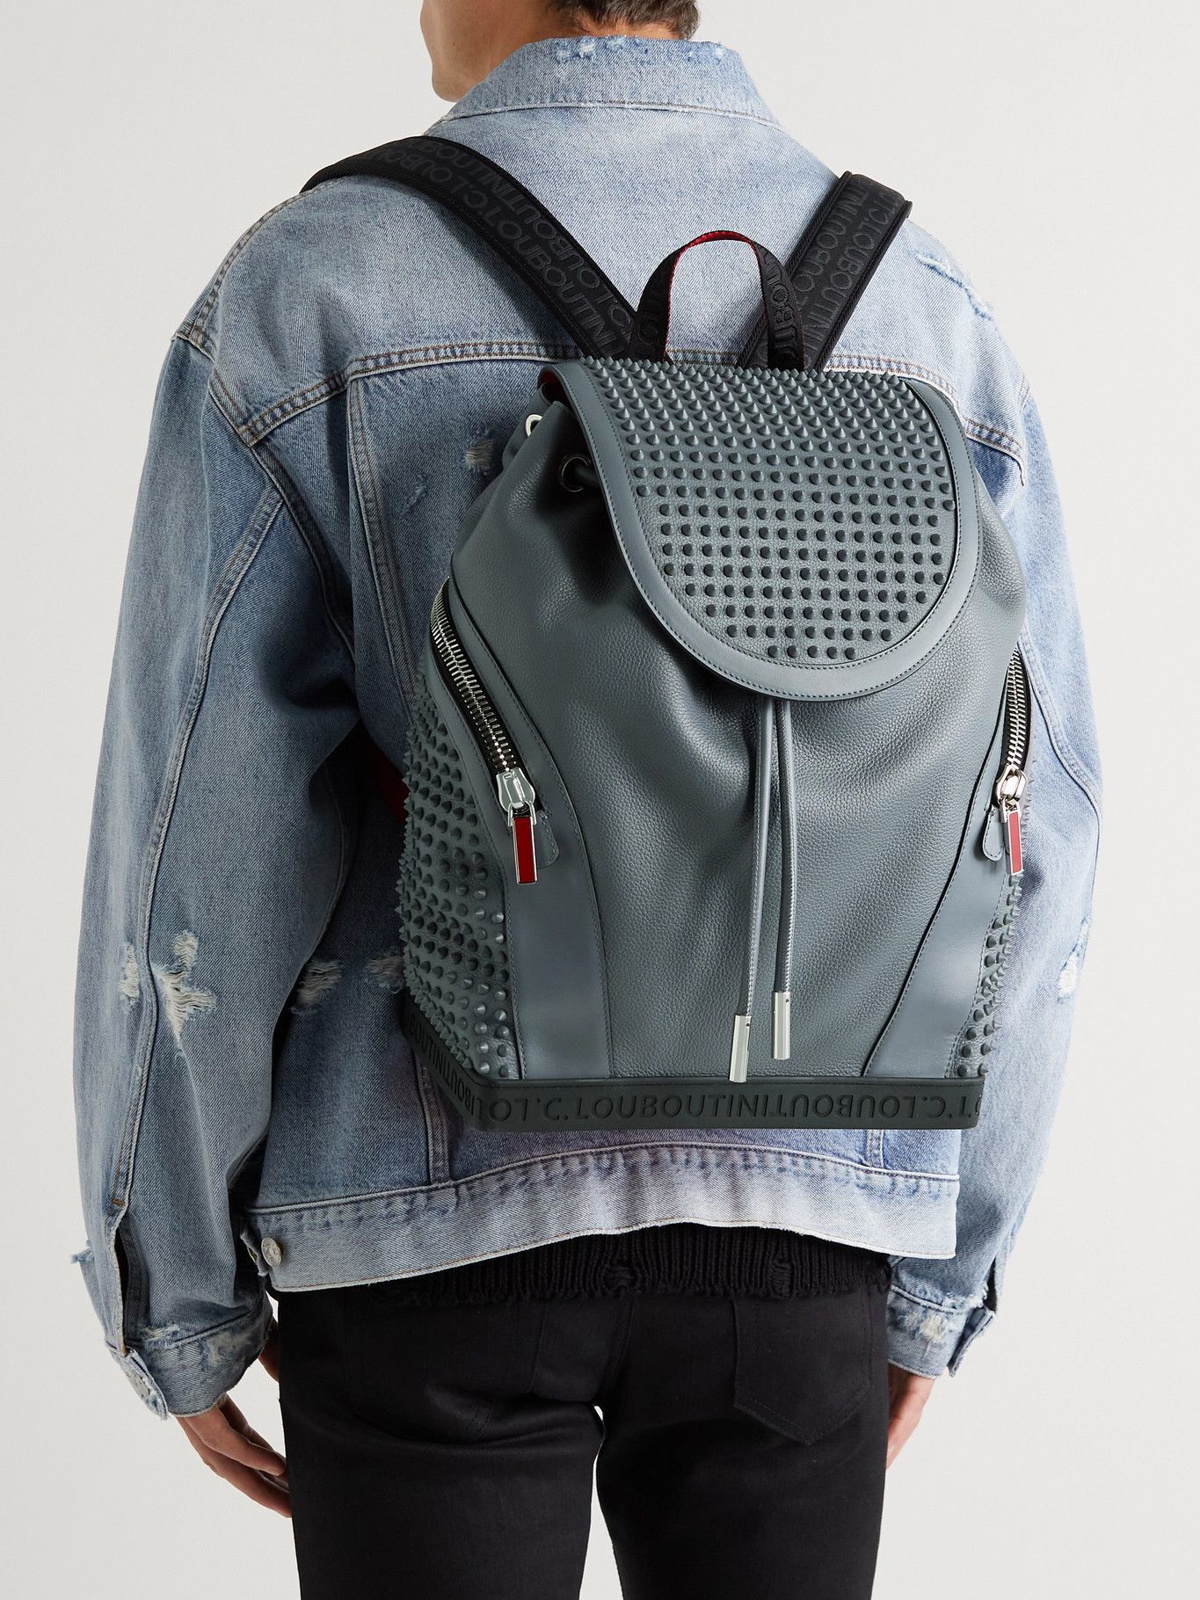 Christian Louboutin Explorafunk Spike-embellished Backpack for Men